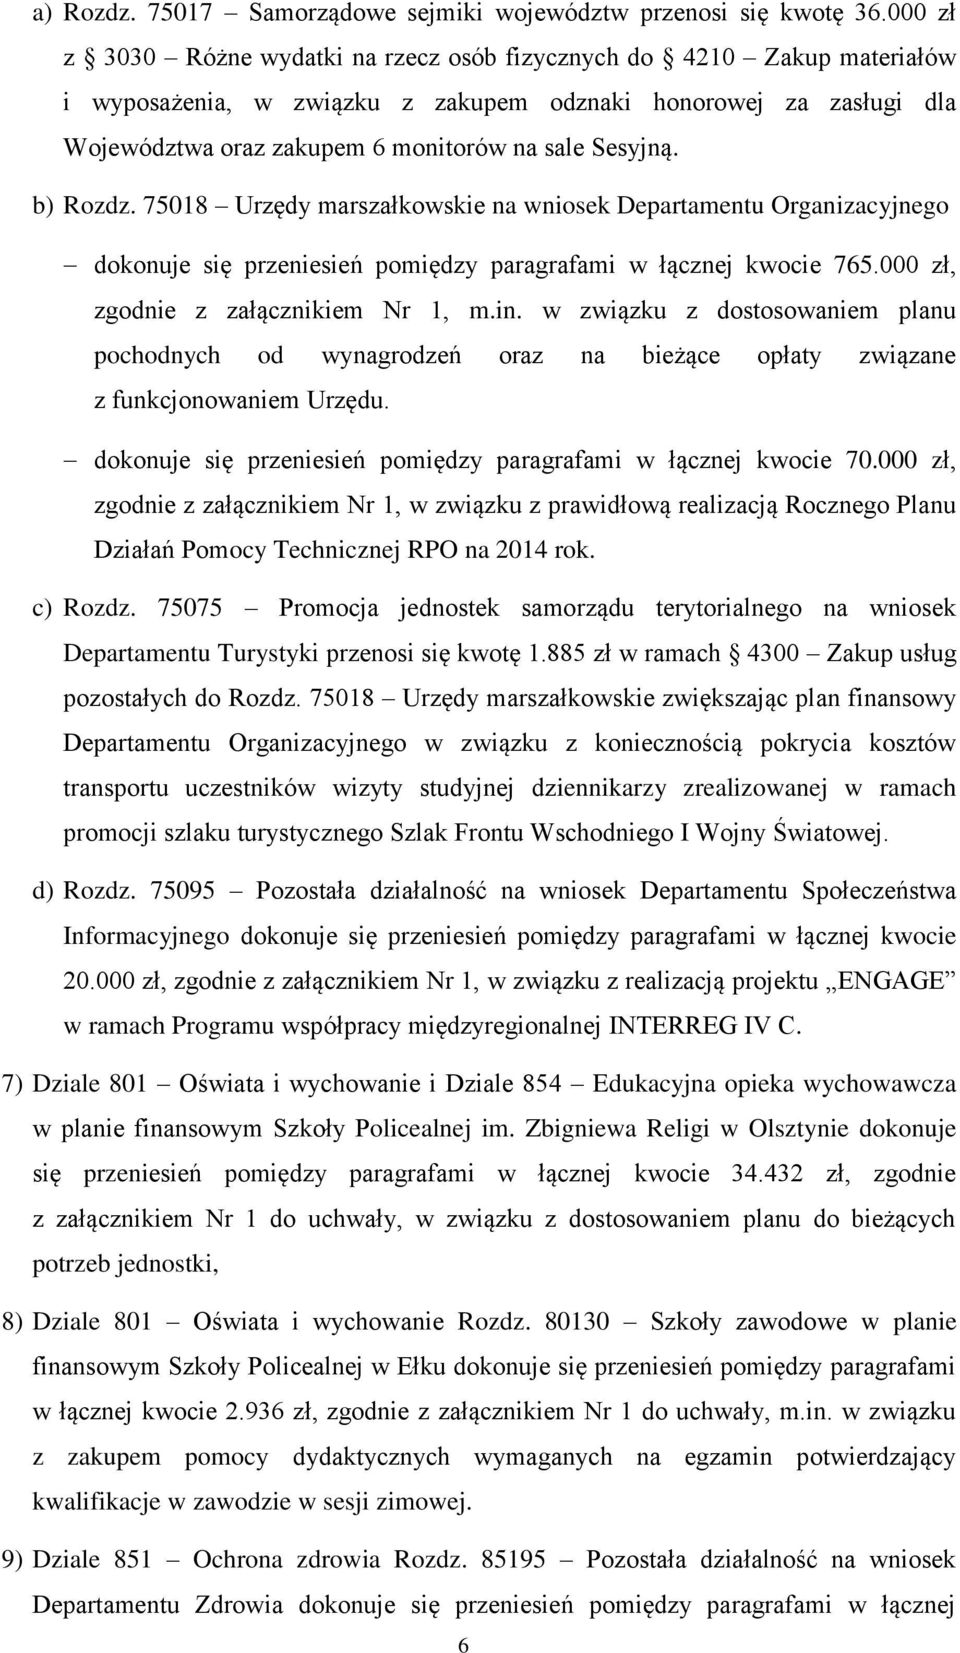 b) Rozdz. 75018 Urzędy marszałkowskie na wniosek Departamentu Organizacyjnego dokonuje się przeniesień pomiędzy paragrafami w łącznej kwocie 765.000 zł, zgodnie z załącznikiem Nr 1, m.in.